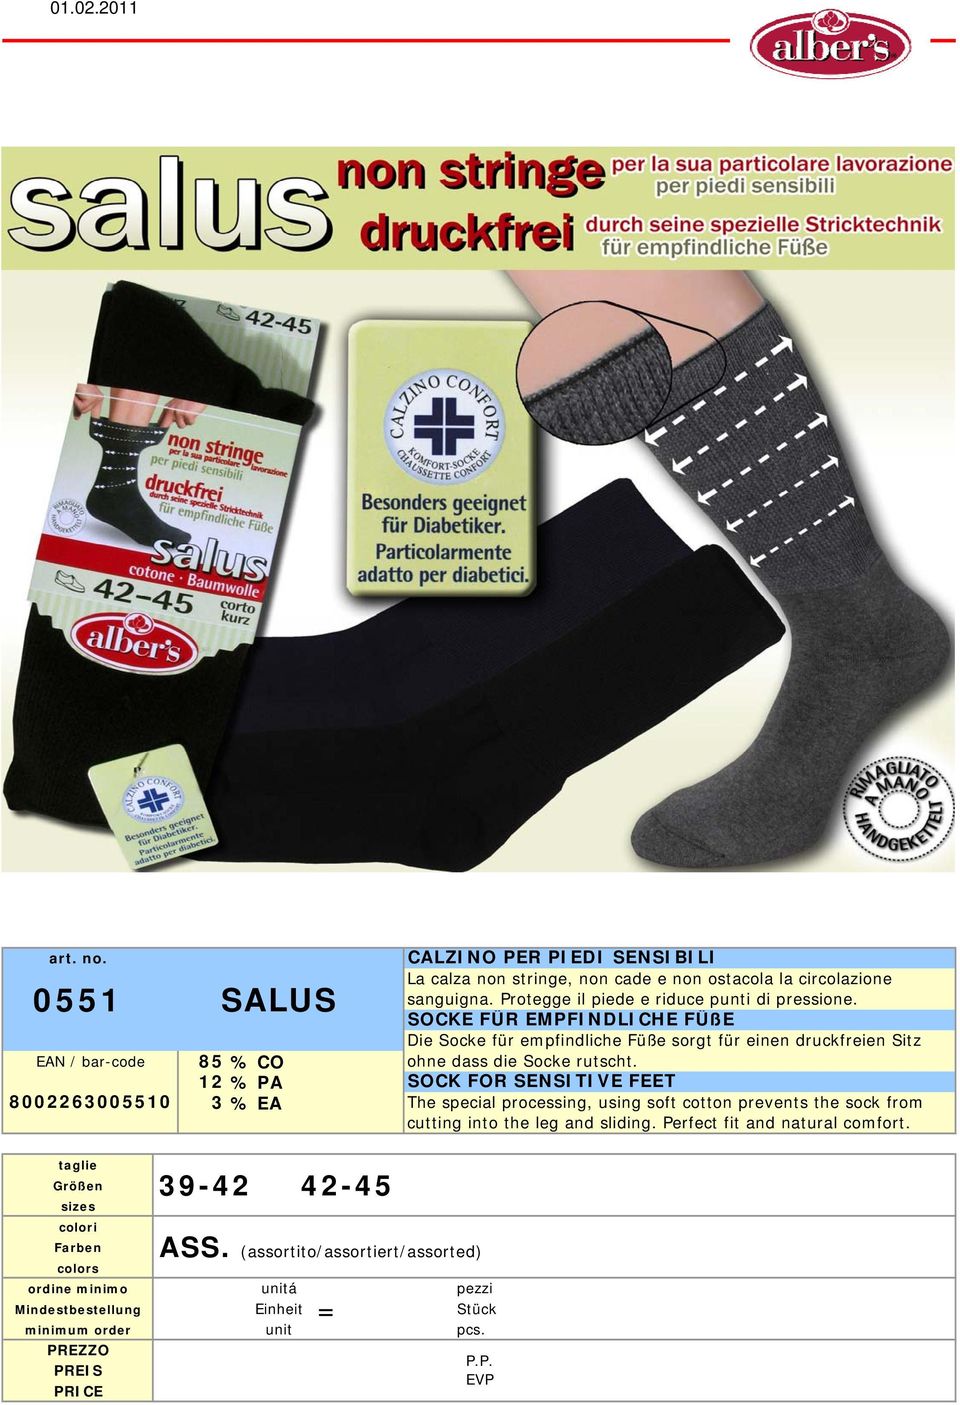 SOCKE FÜR EMPFINDLICHE FÜßE Die Socke für empfindliche Füße sorgt für einen druckfreien Sitz ohne dass die Socke rutscht.